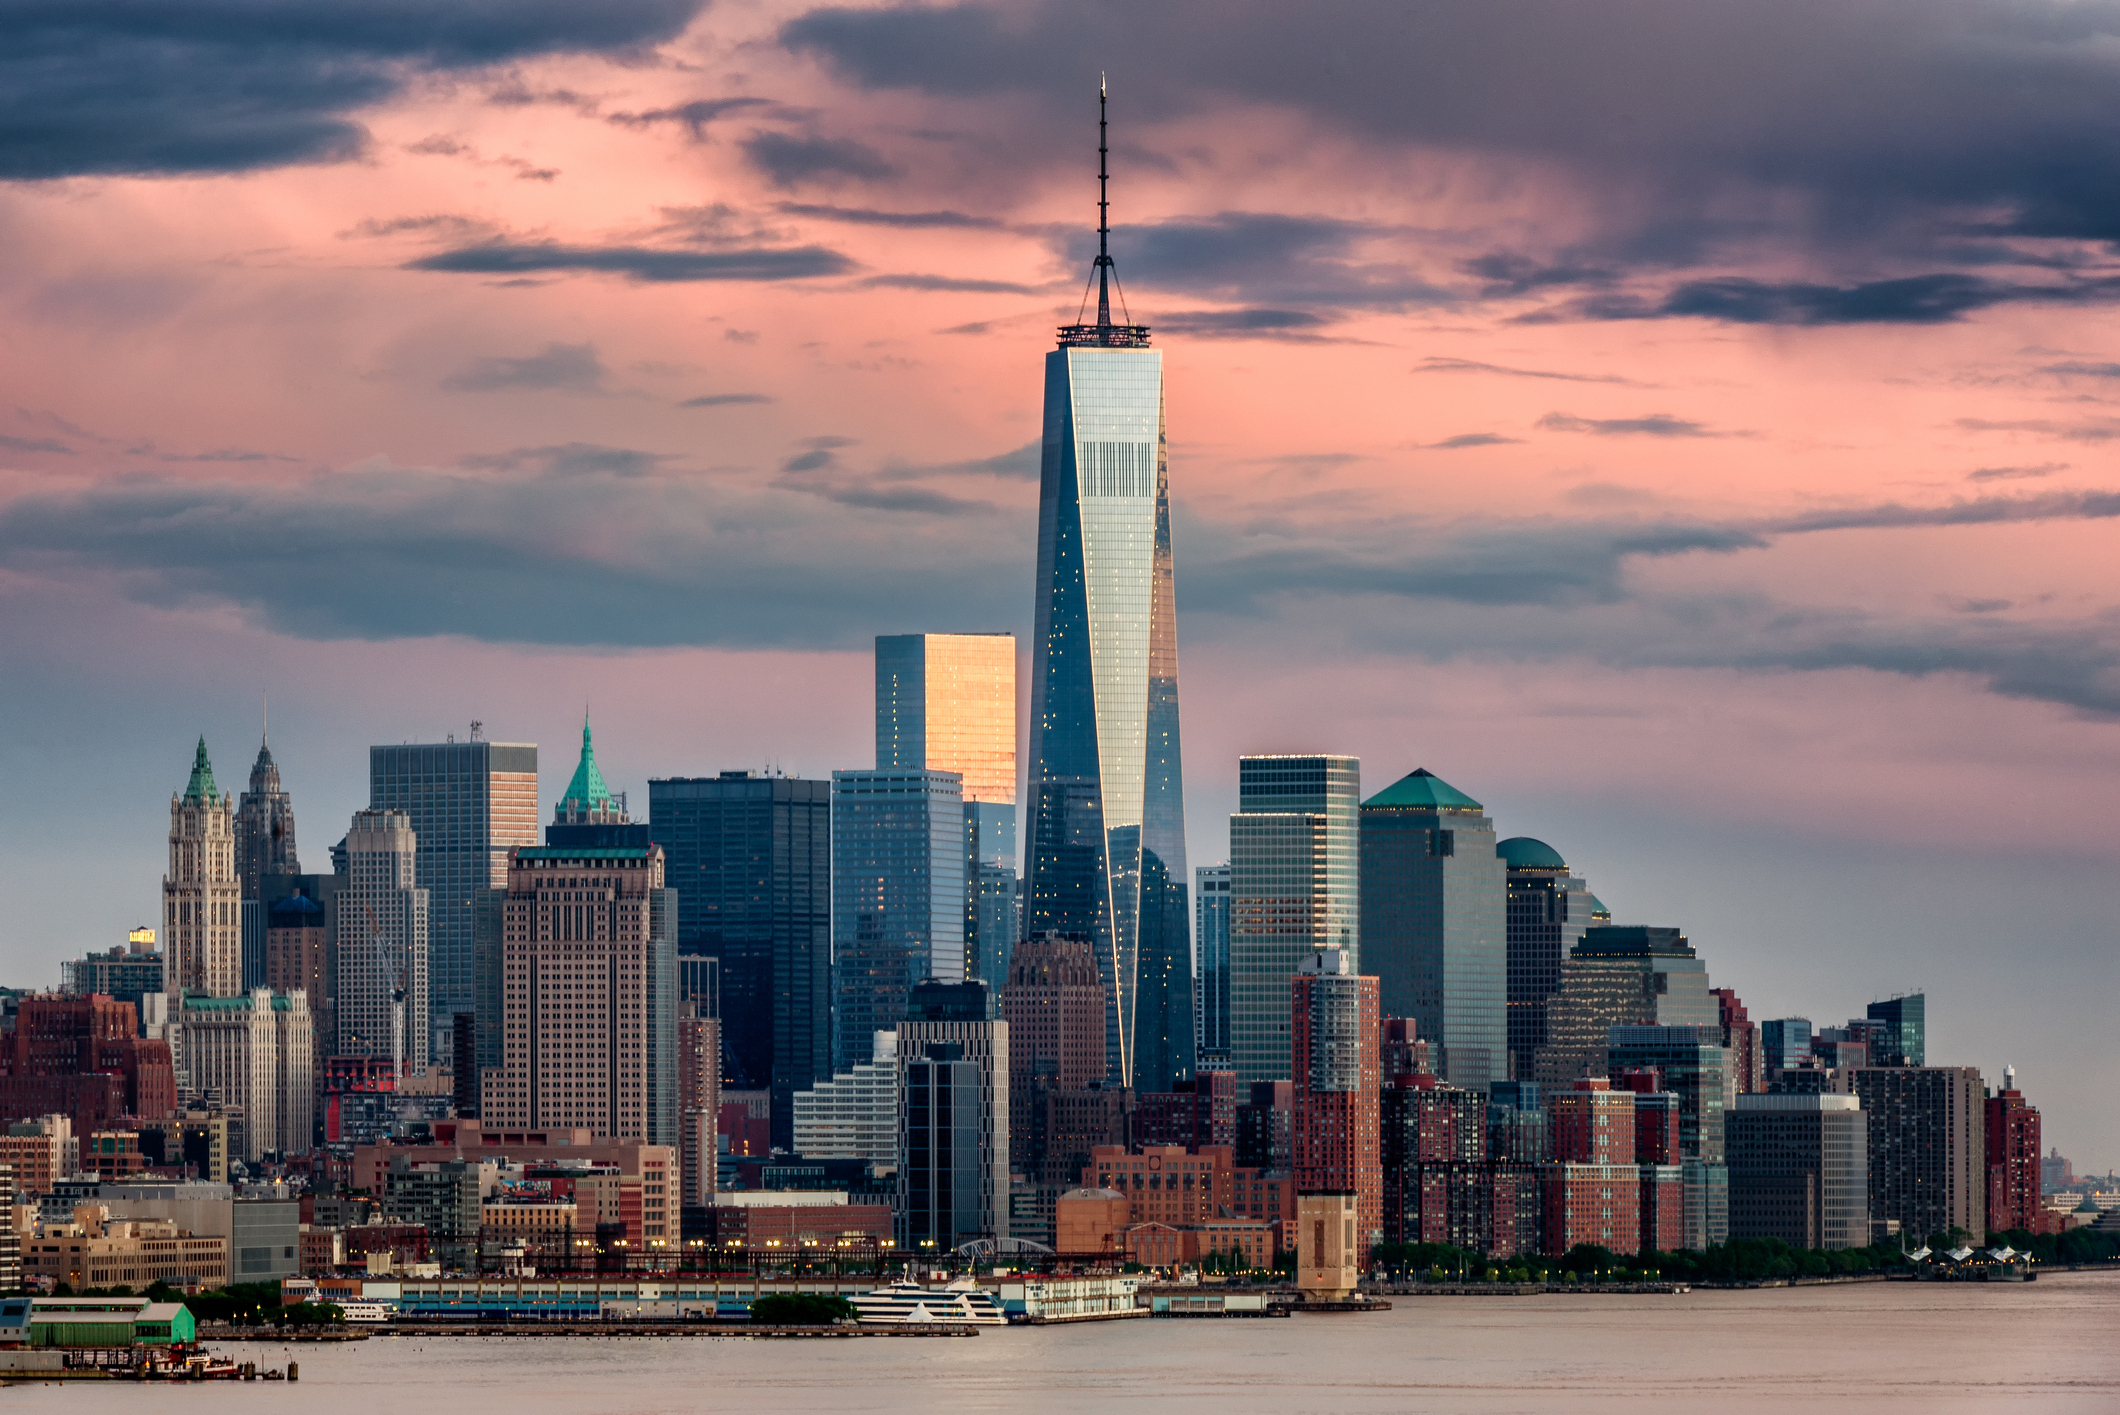 Търговски център One World, Ню Йорк построен 2012 г. Той се издига на височина 1,776 фута  (541 м). Неговата цена: 3,8 милиарда долара.